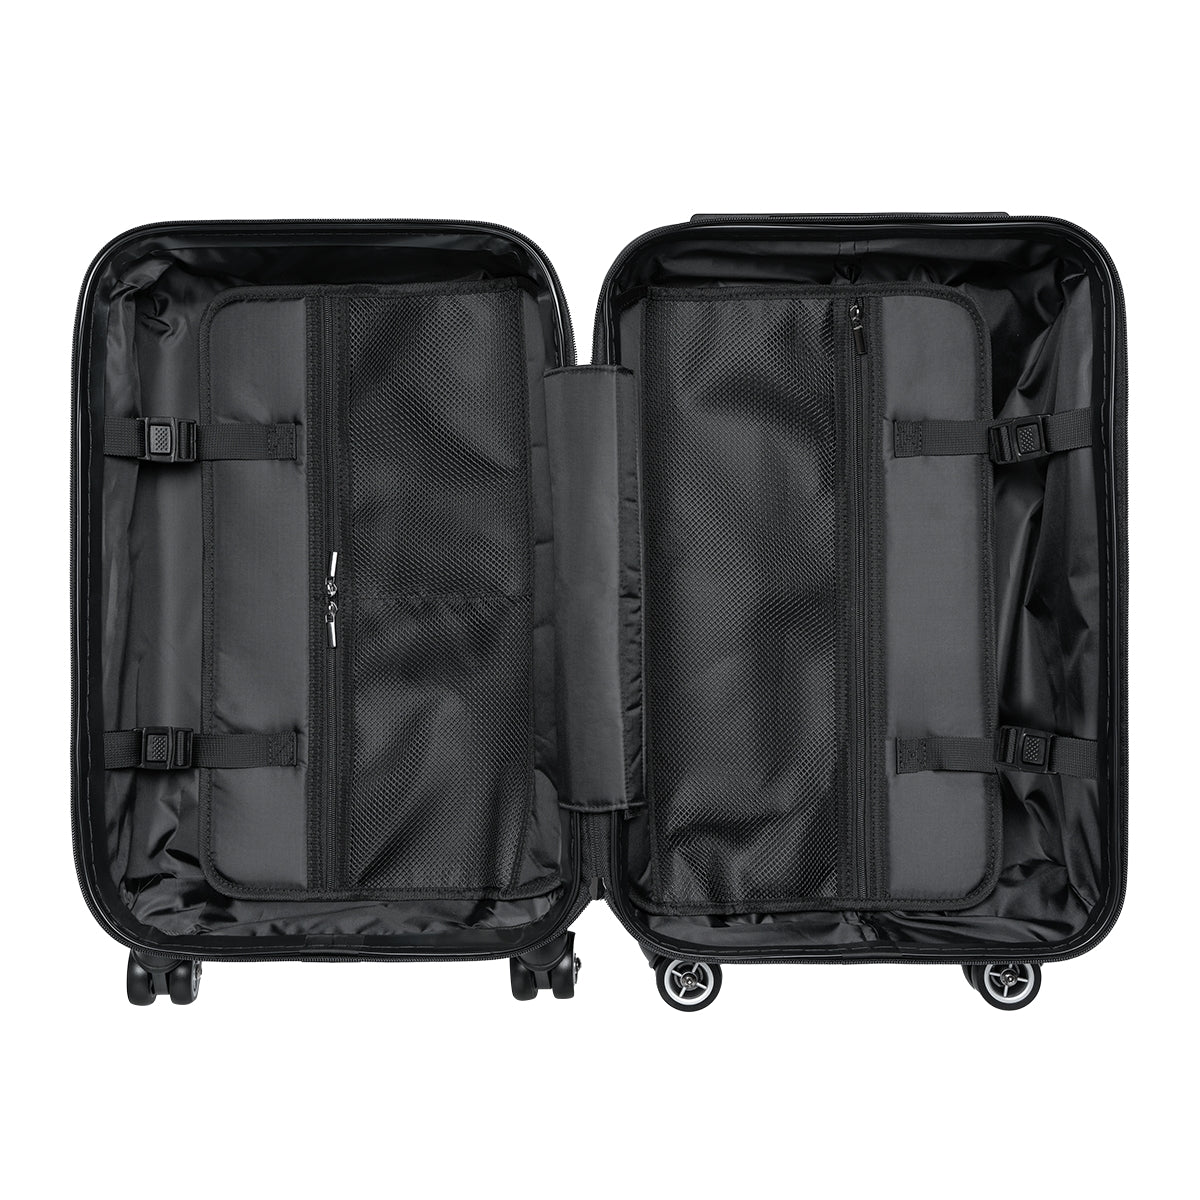 Customized Initials Suitcase